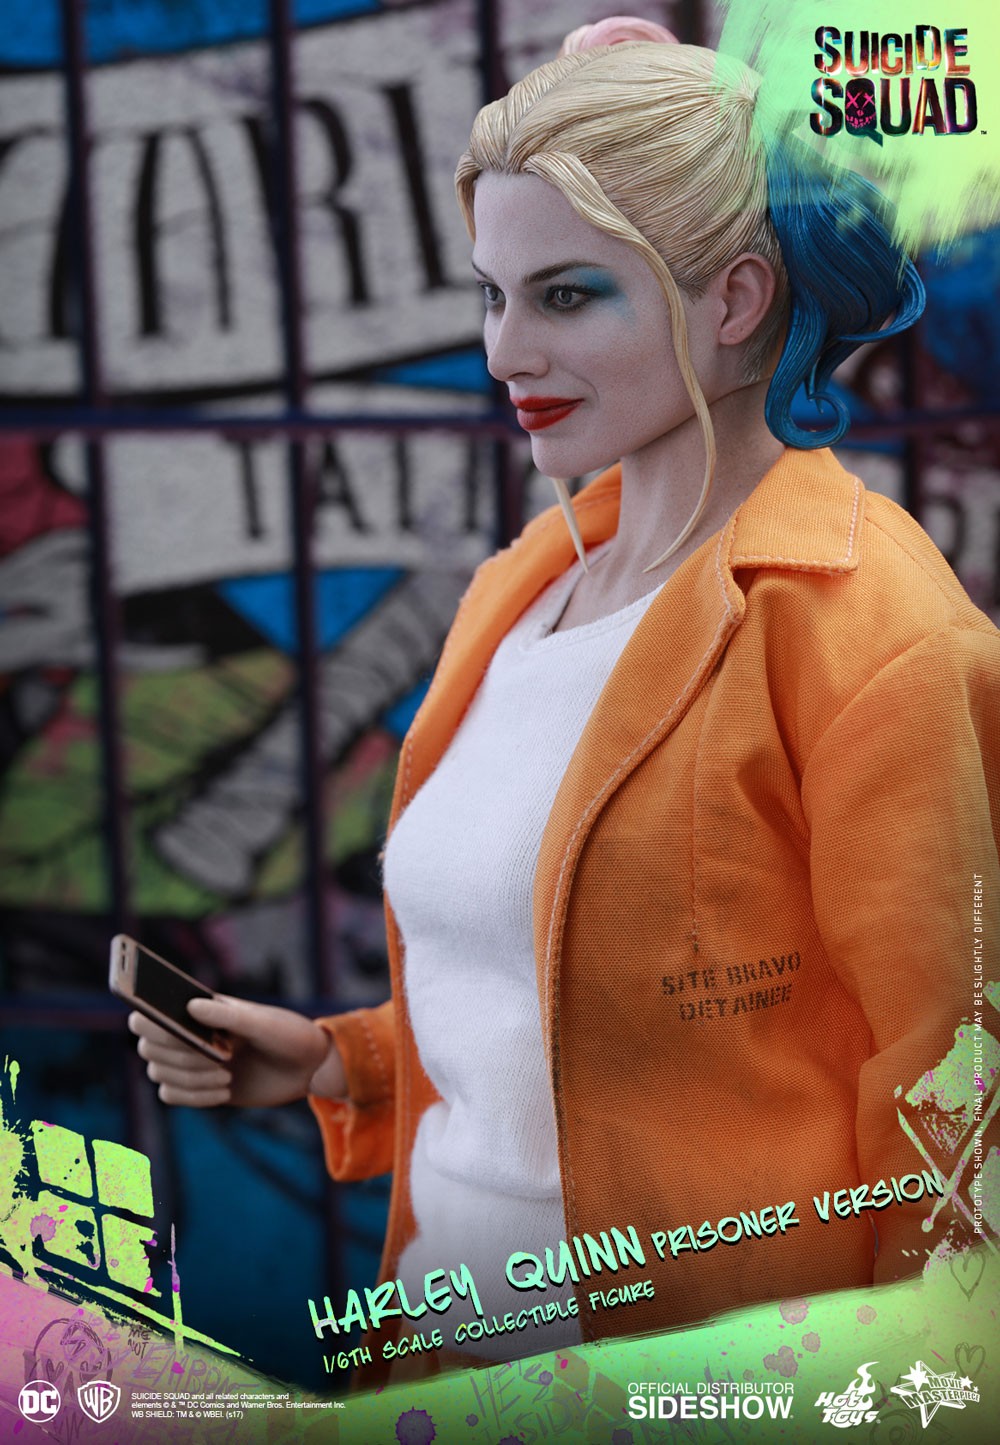 Harley Quinn Prisoner Version- Prototype Shown